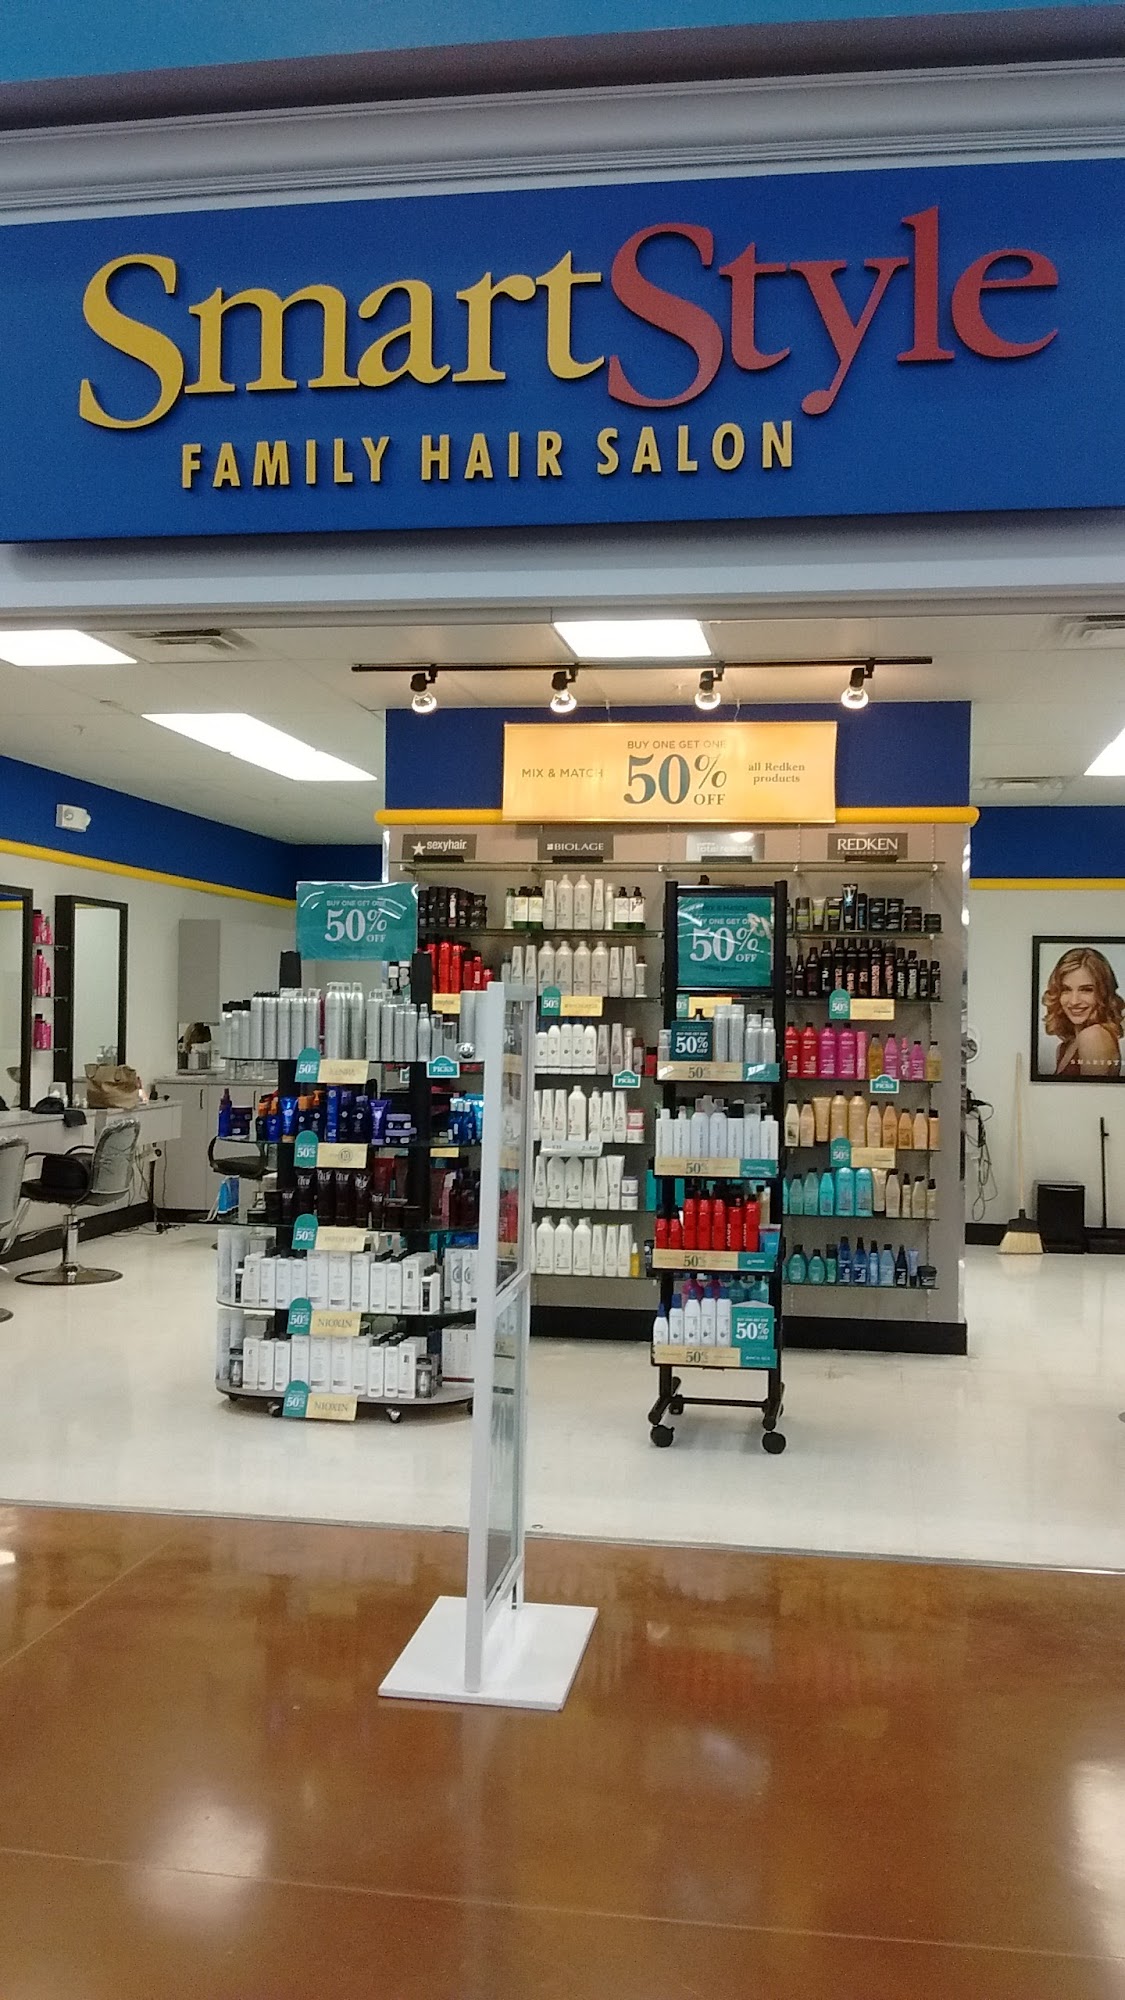 SmartStyle Hair Salon 301 Town Center Blvd Located Inside Walmart #1333, 301 Towne Center Blvd, Van Wert Ohio 45891